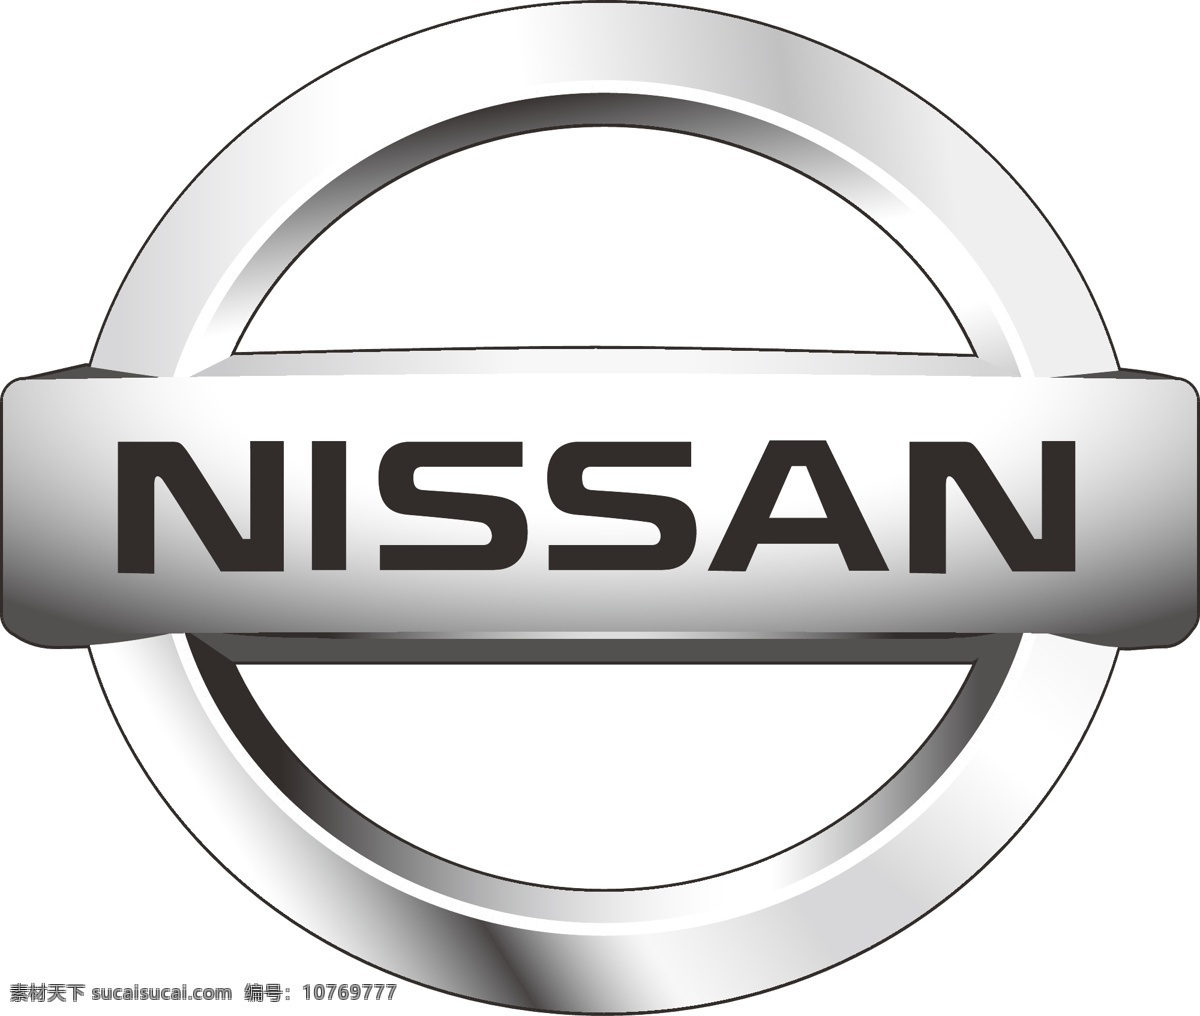 nissan 尼桑 汽车商标 汽车logo 包装设计